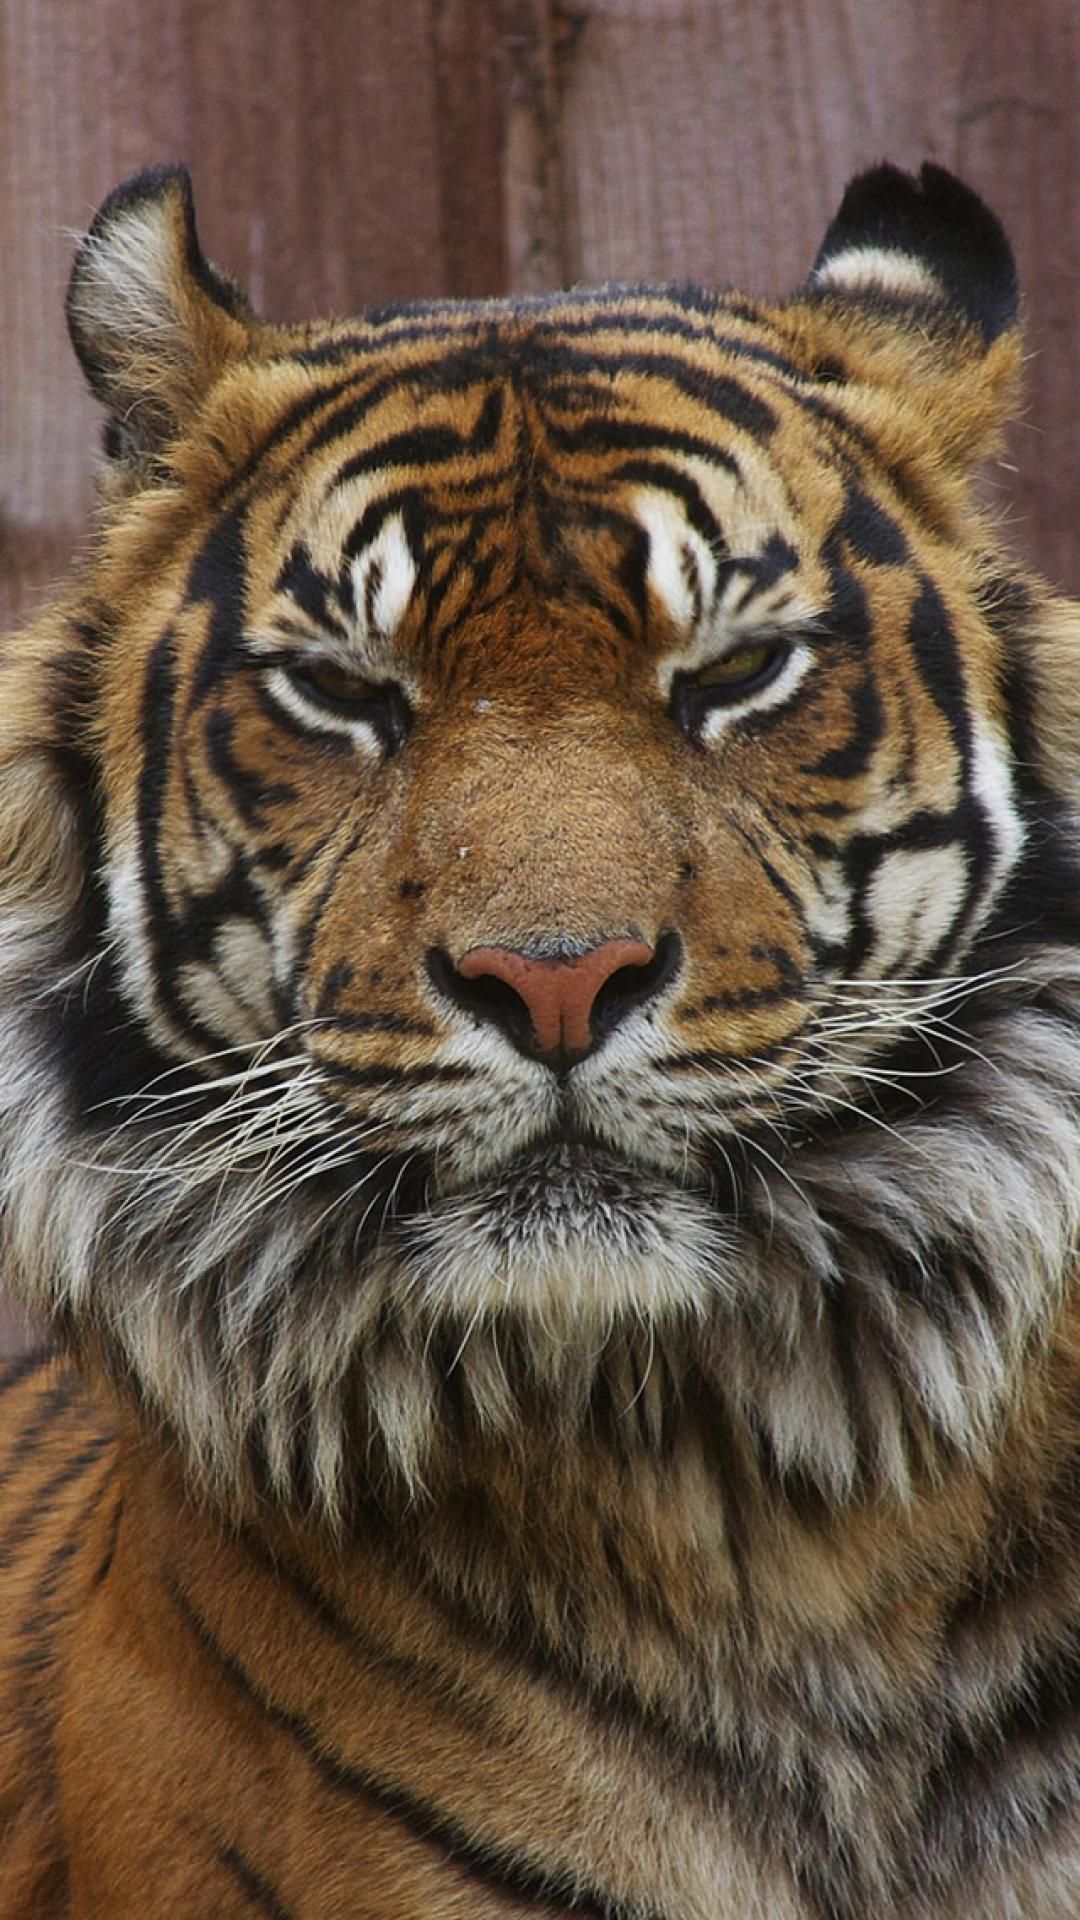 tigerauge tapete,tiger,landtier,tierwelt,bengalischer tiger,sibirischer tiger